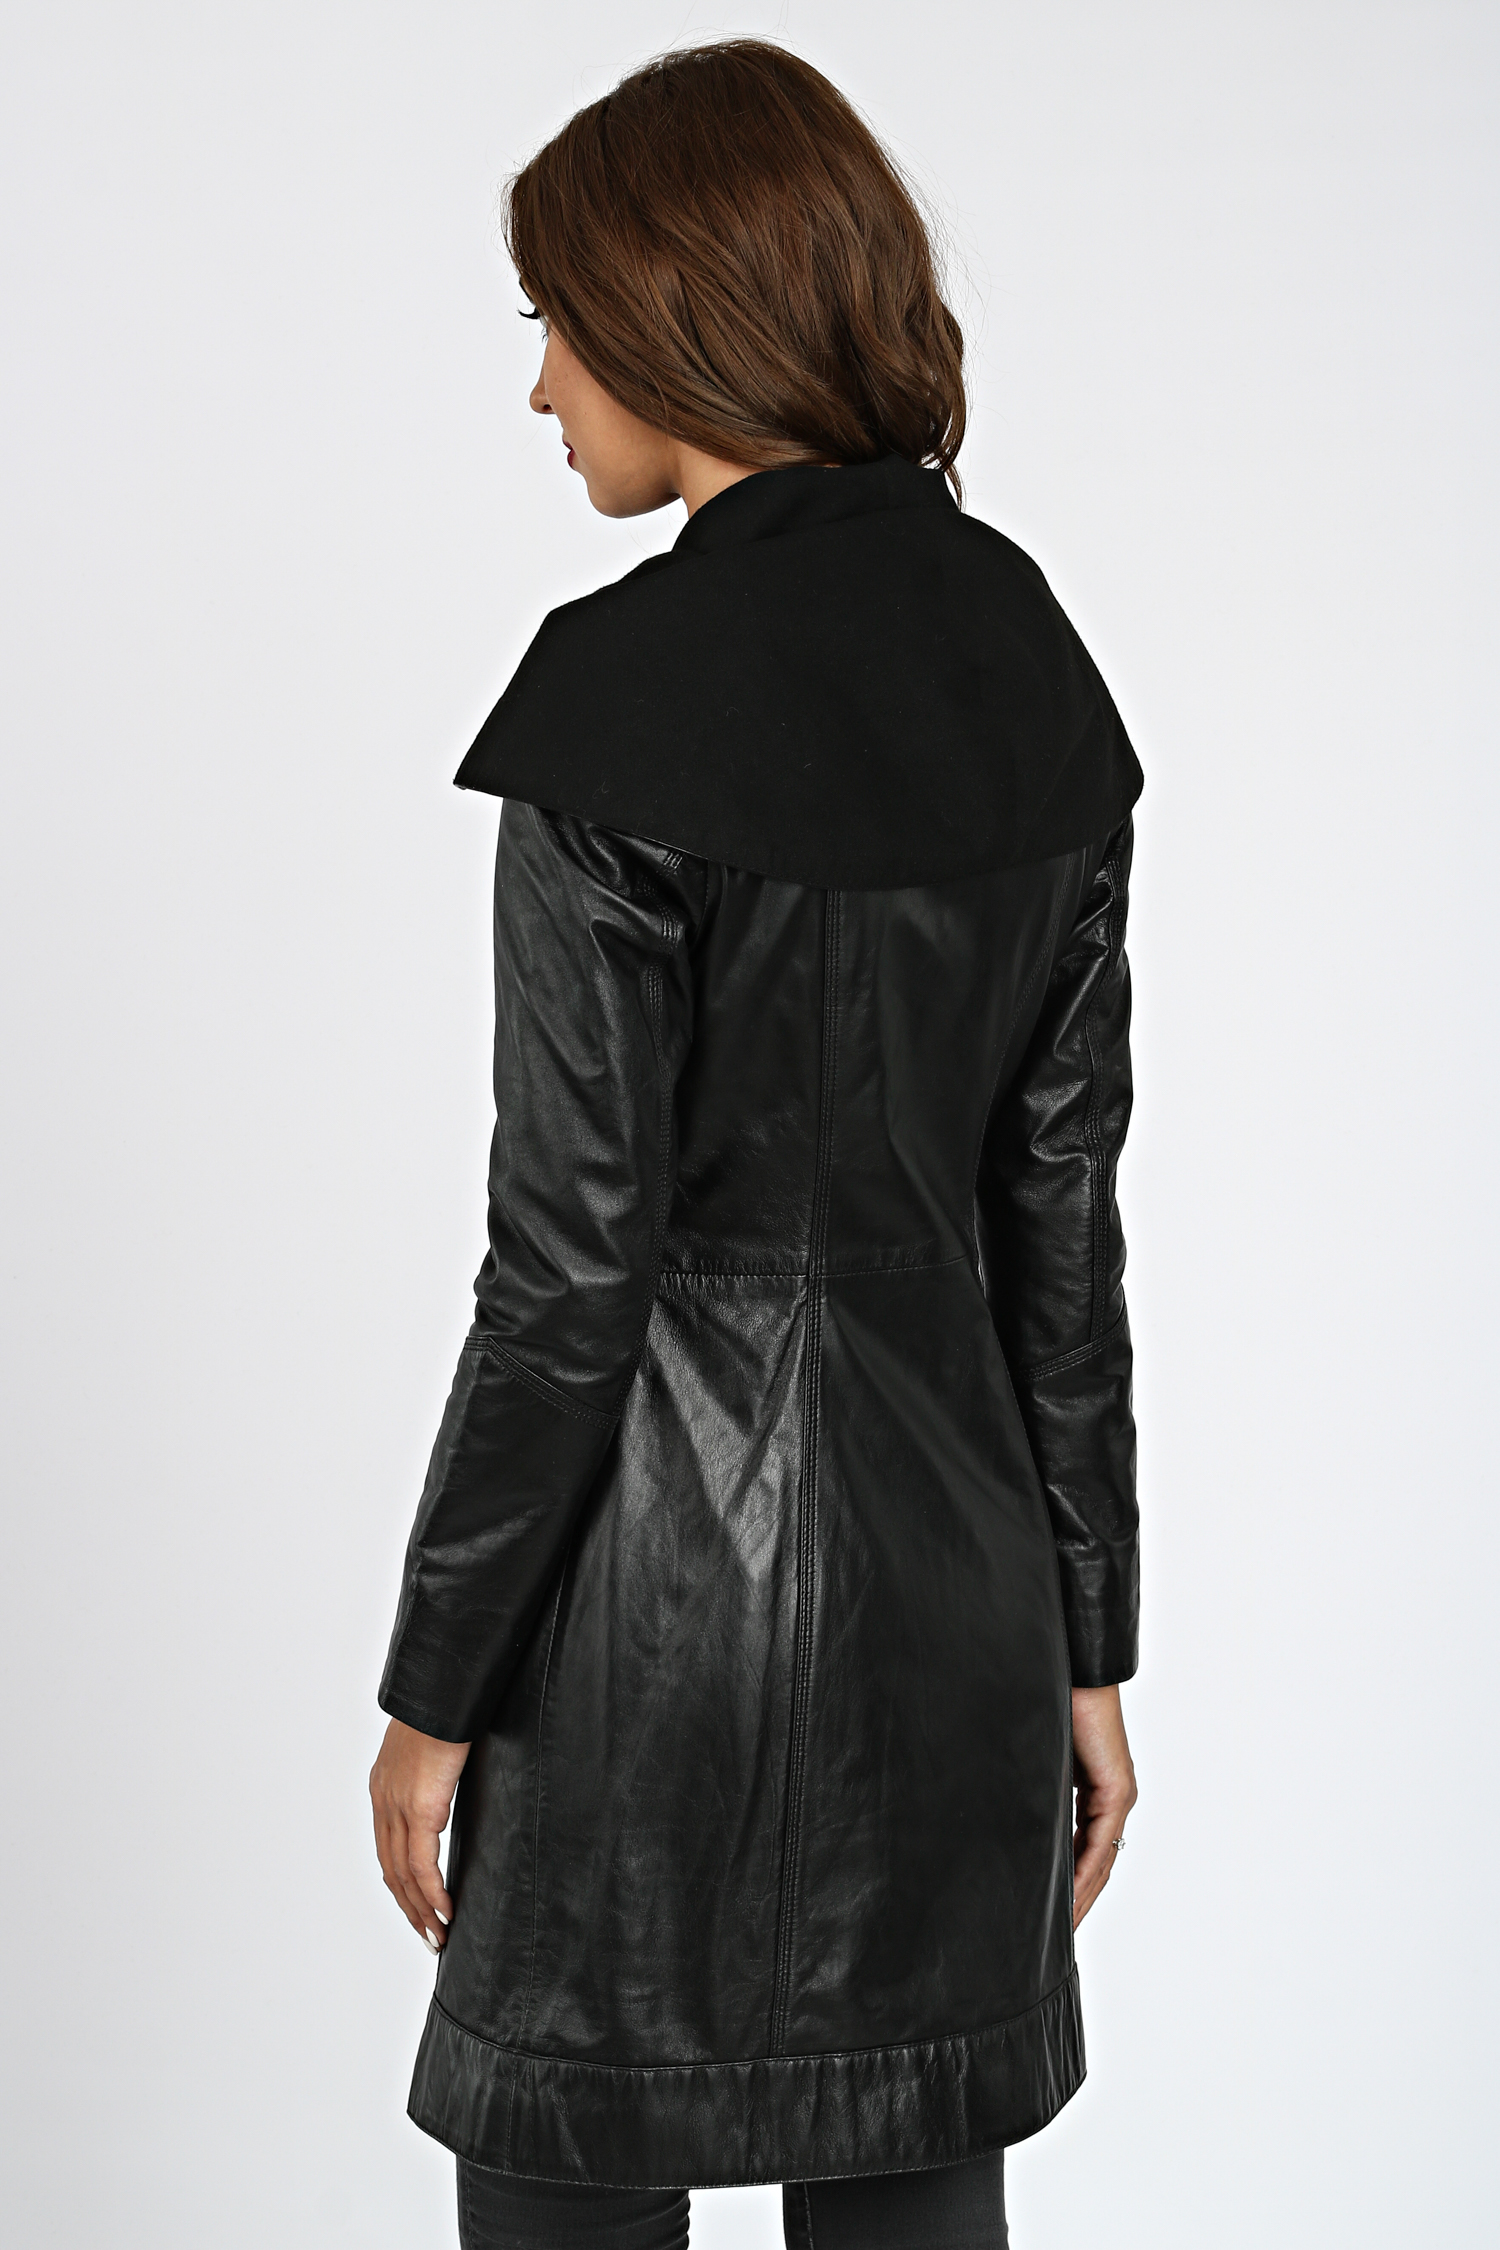 Женская кожаная куртка из натуральной кожи с капюшоном, без отделки